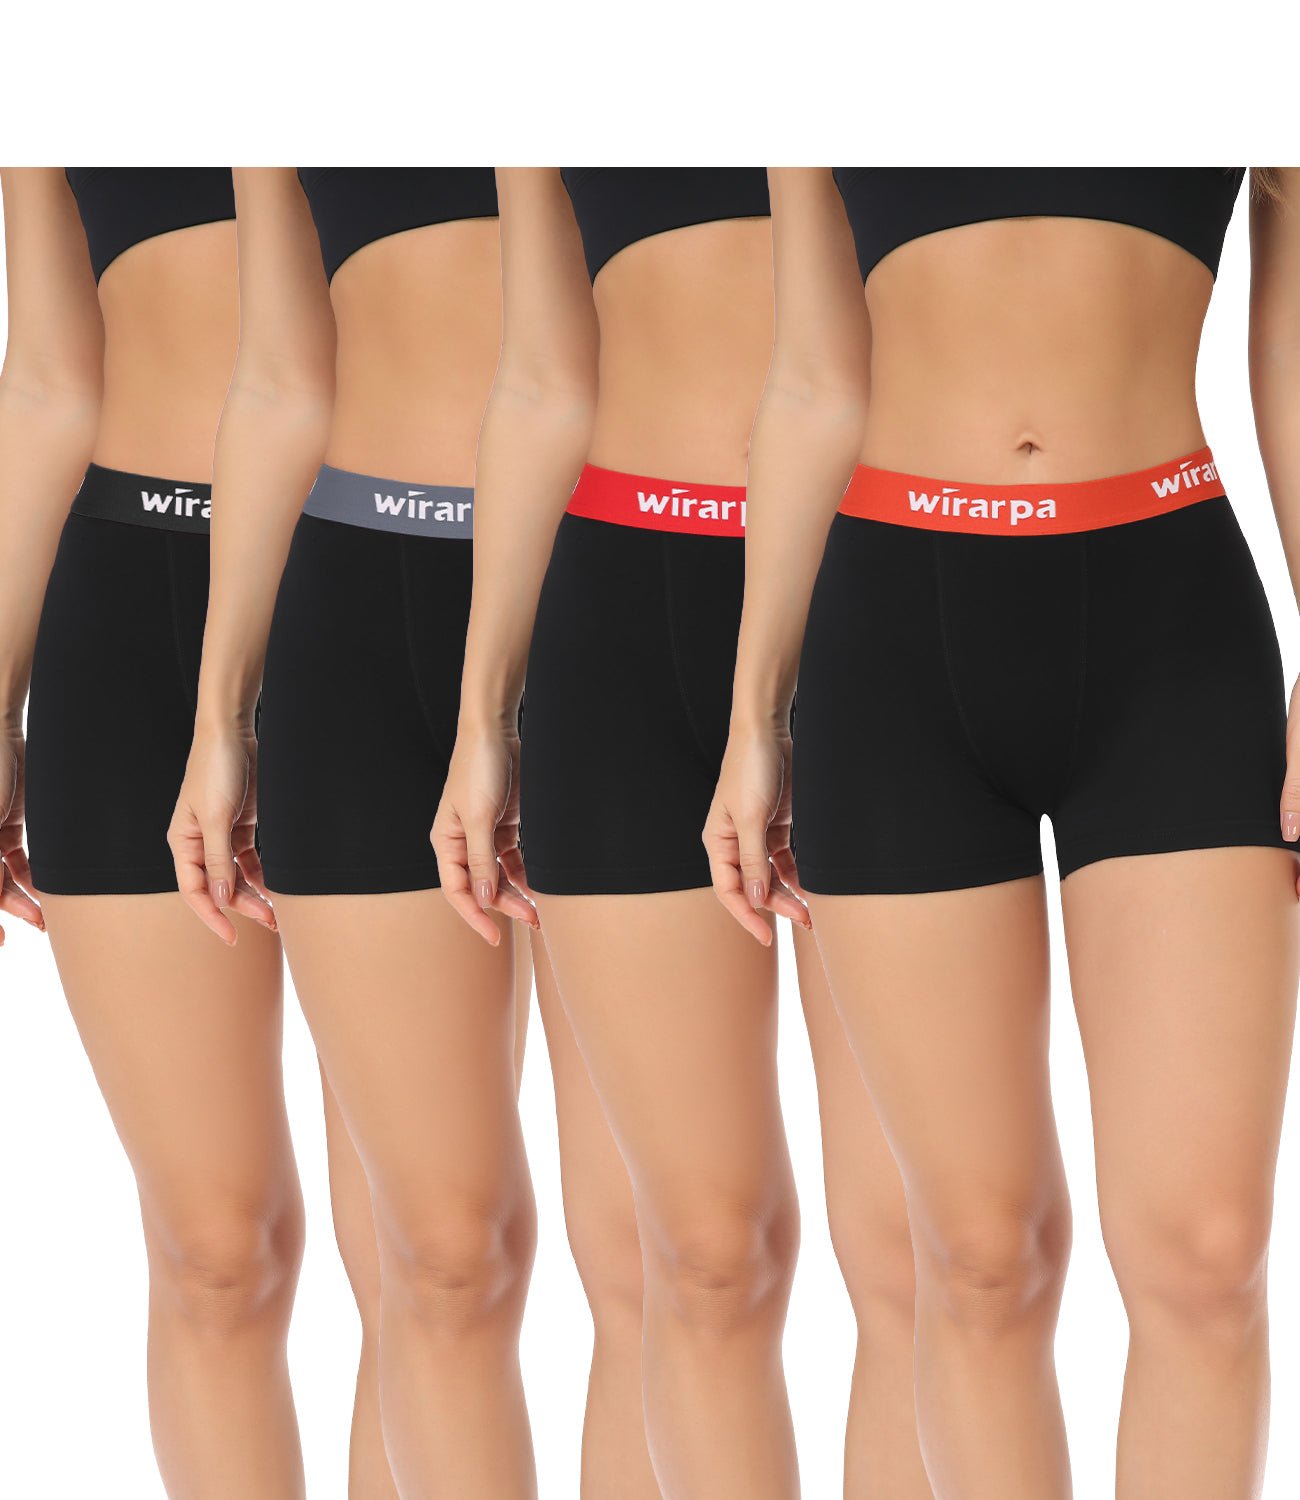 Wirarpa Women's Cotton Boxer Briefs Underwear Anti Chafe Boy Shorts 3" Inseam 4 Pack - Wirarpa Apparel, Inc.